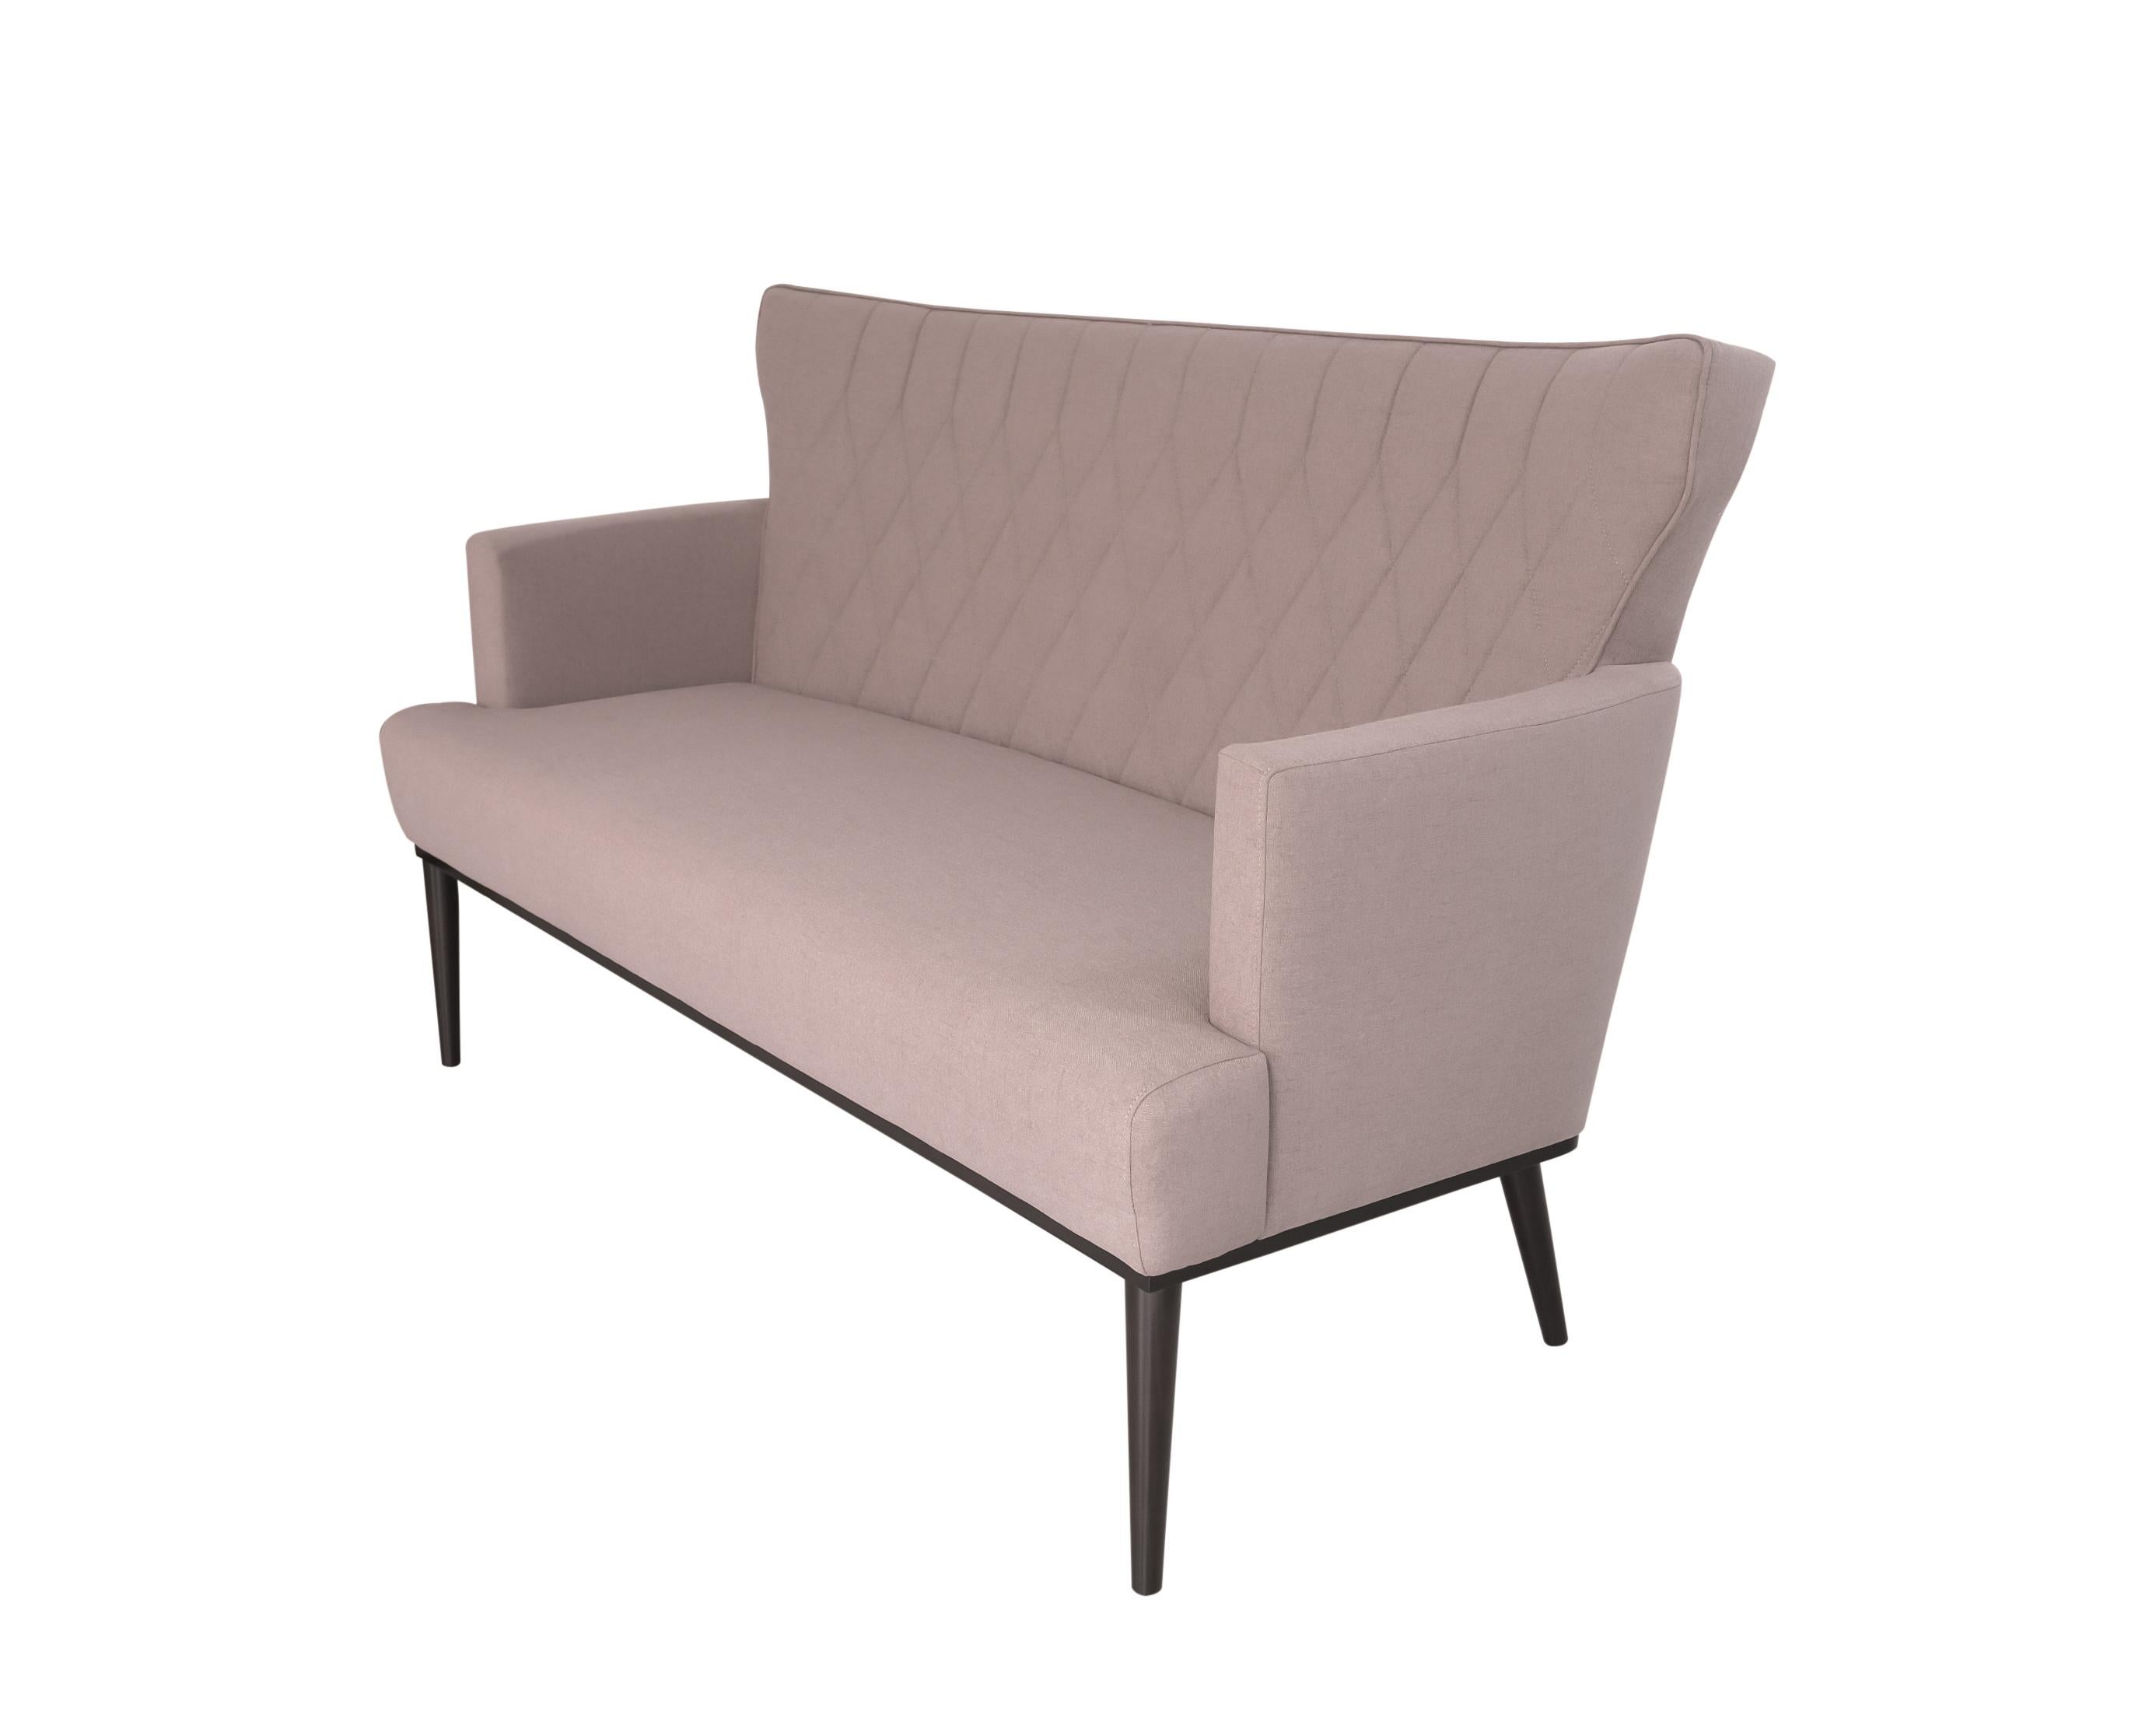 Wir präsentieren unser Majestic Sofa, eine perfekte Verbindung von Schlichtheit und Raffinesse. Dieses exquisite Möbelstück zeichnet sich durch die sorgfältig handgefertigten Nähte entlang der Rückenlehne aus, die ein einzigartiges und luxuriöses